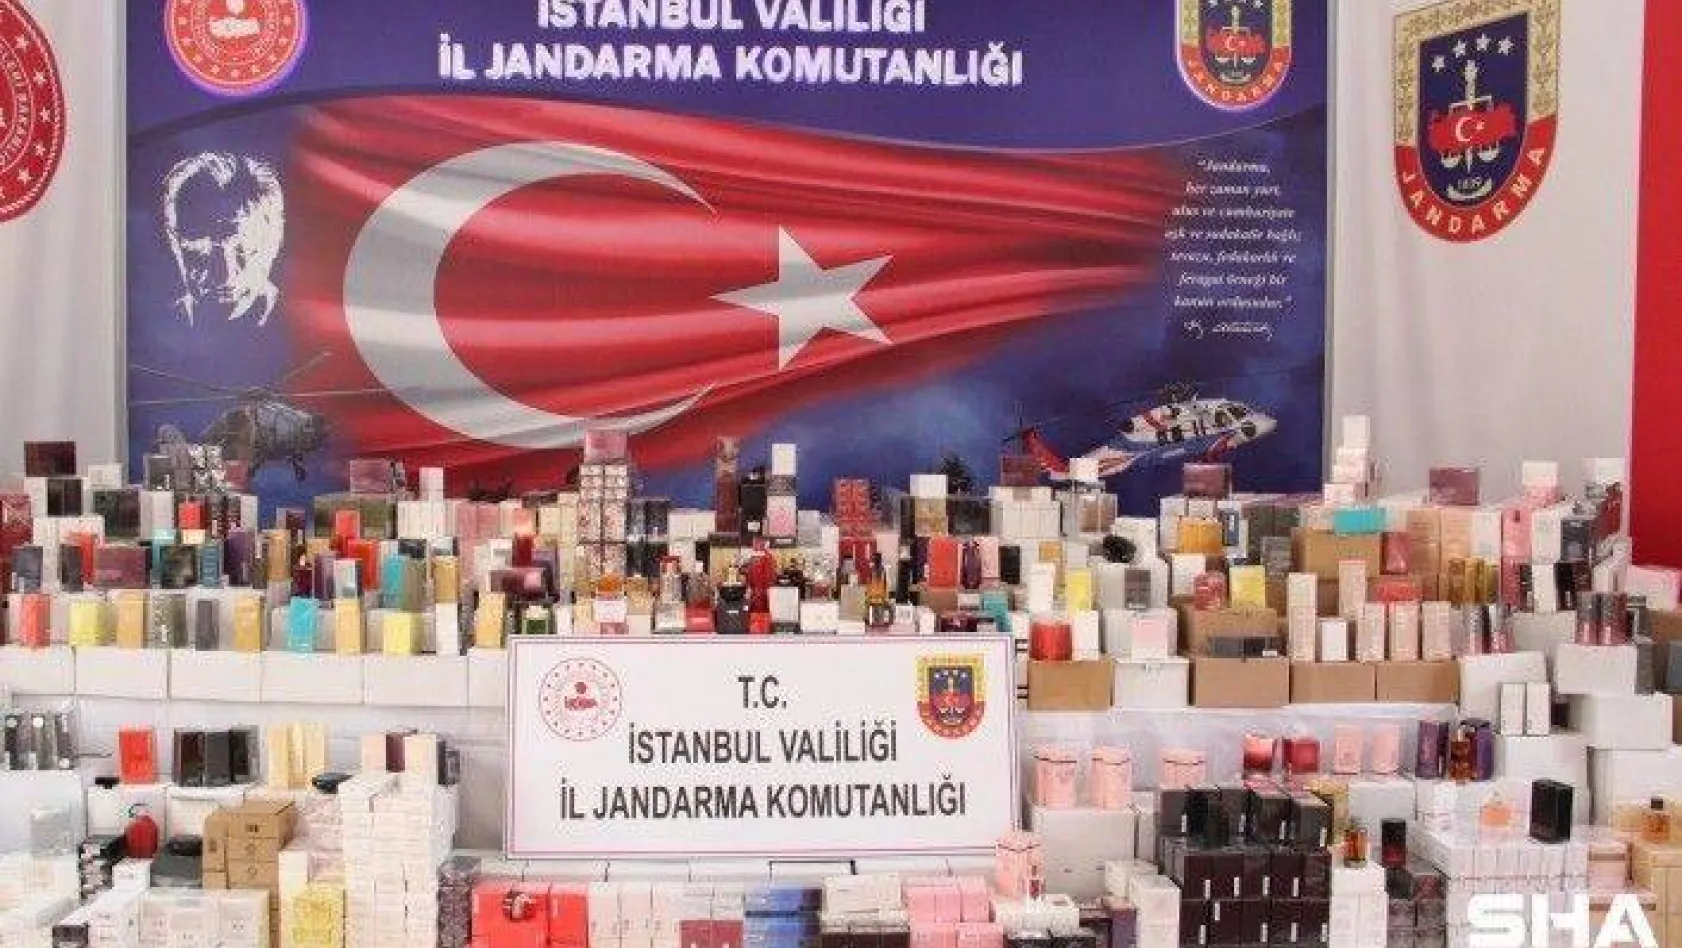 Jandarmadan sahte parfüm operasyonu:20 bin şişe sahte parfüm ele geçirildi